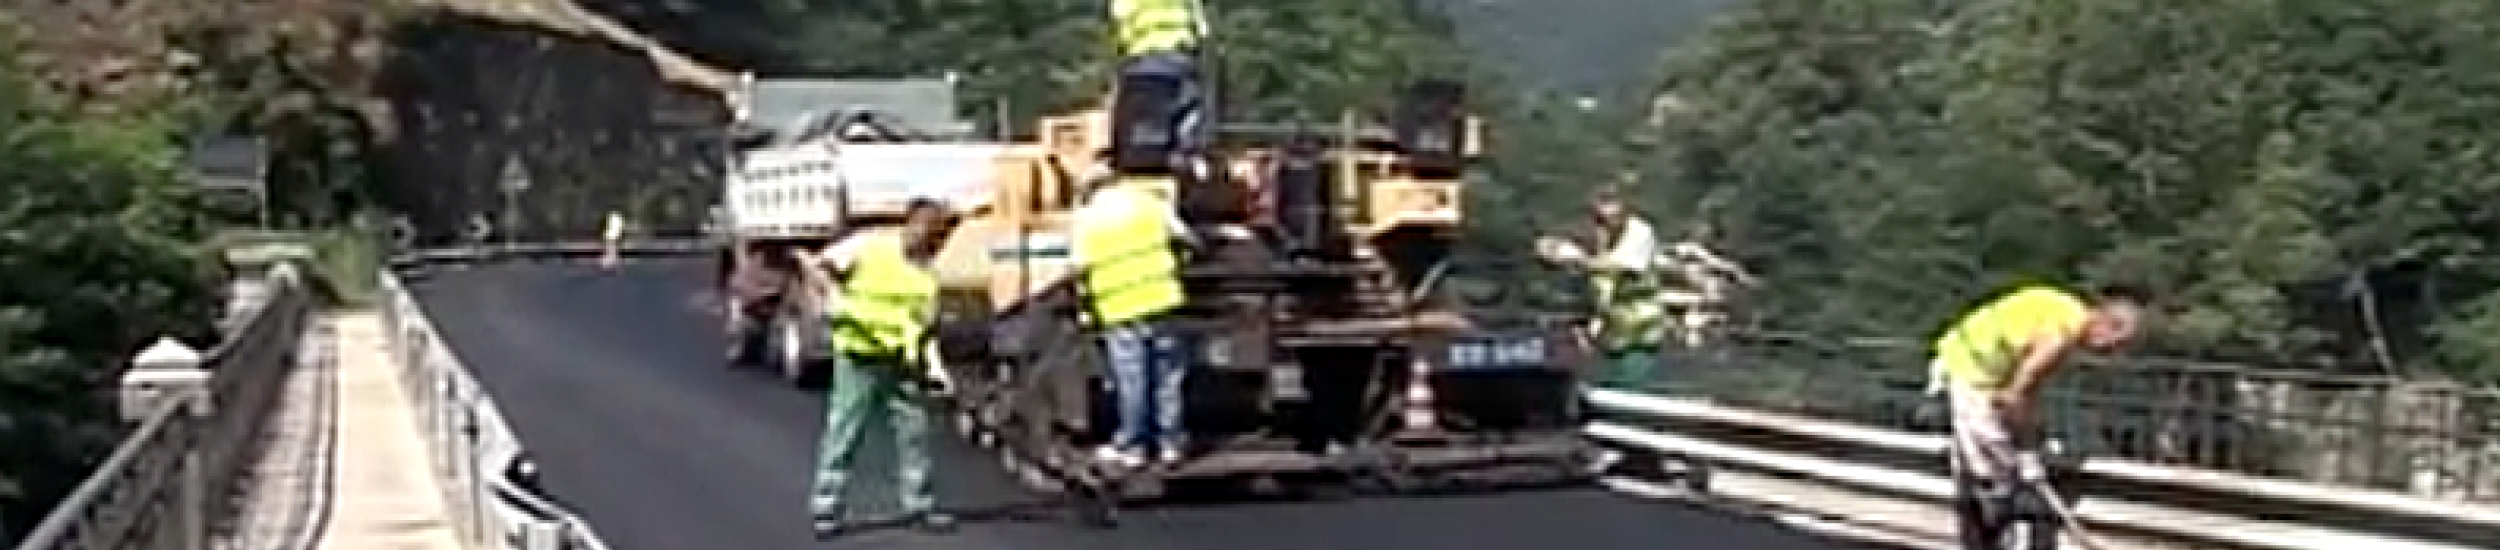 News: Campoligure, sicurezza con il nuovo asfalto sulla sp 456 (video di tabloid)